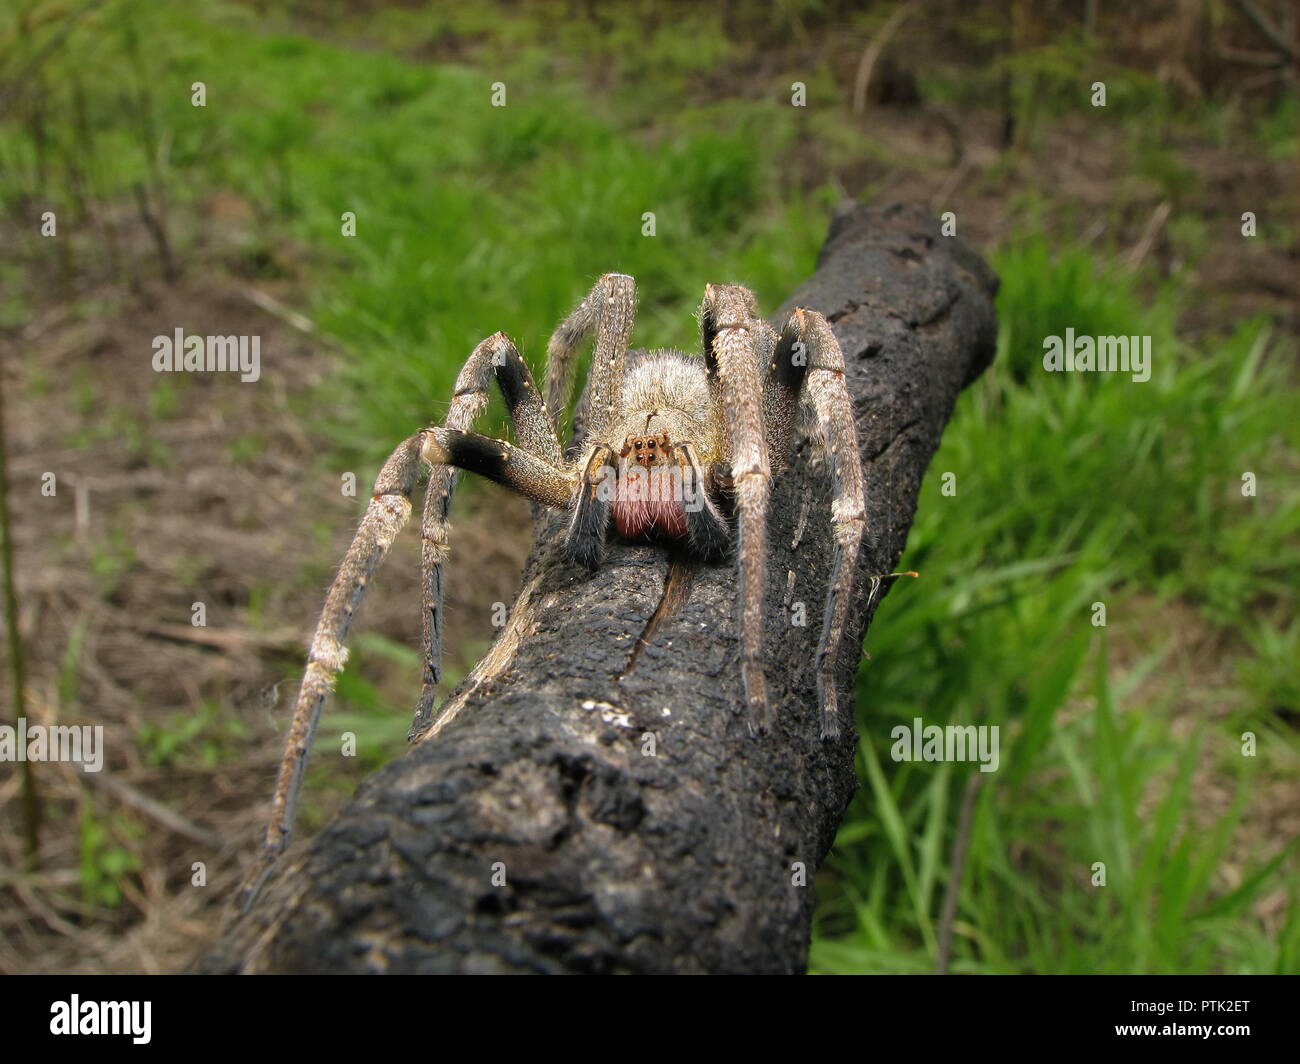 Brasilianische wandering Spinne (Phoneutria) auf einem offenen Feld, giftige Spinne aus Südamerika, auch bekannt als Armadeira, mit wenigen fatalen Biss Unfälle. Stockfoto